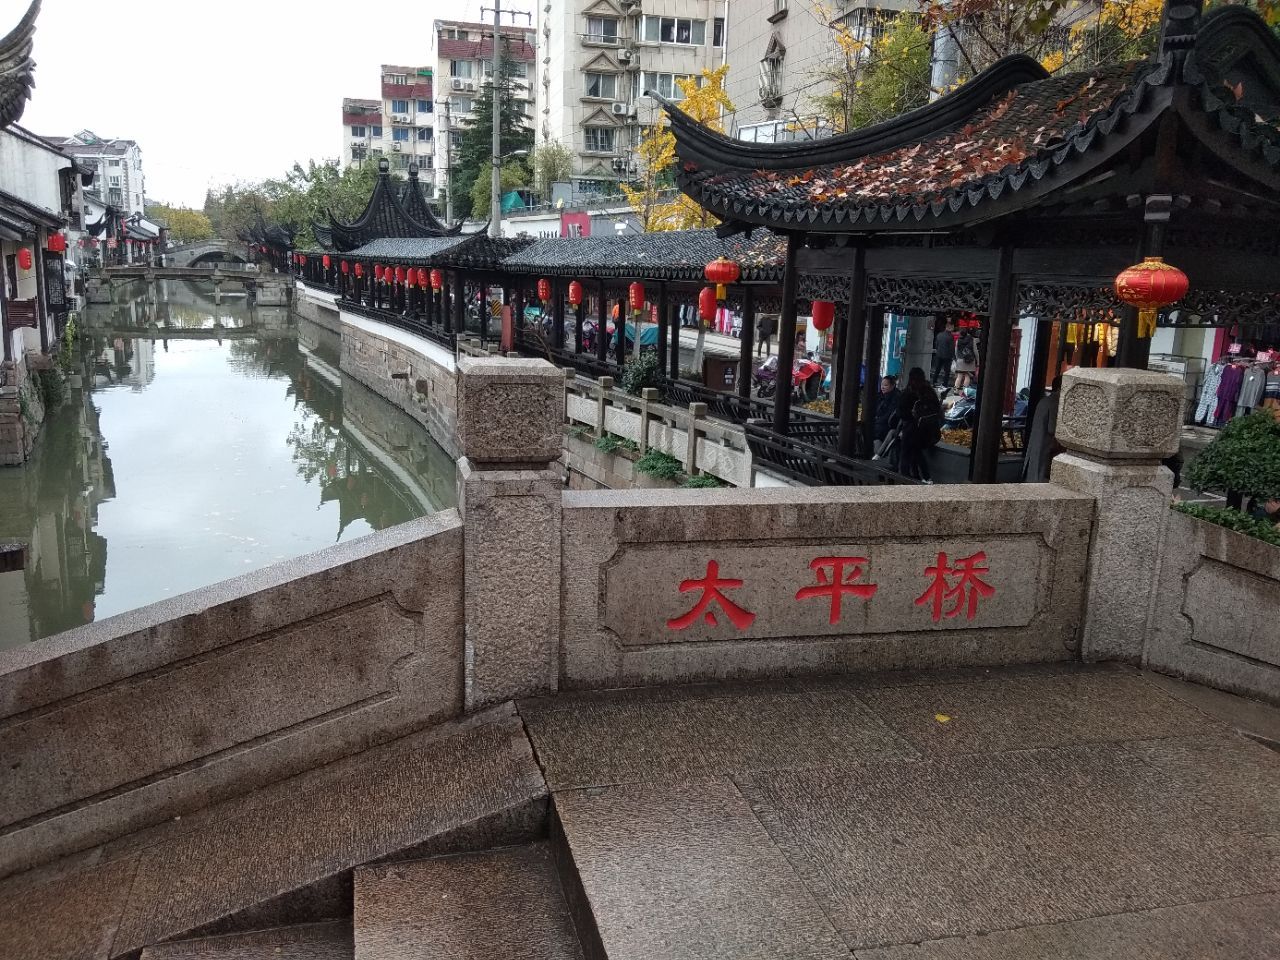 上海太平桥攻略,上海太平桥门票/游玩攻略/地址/图片/门票价格【携程